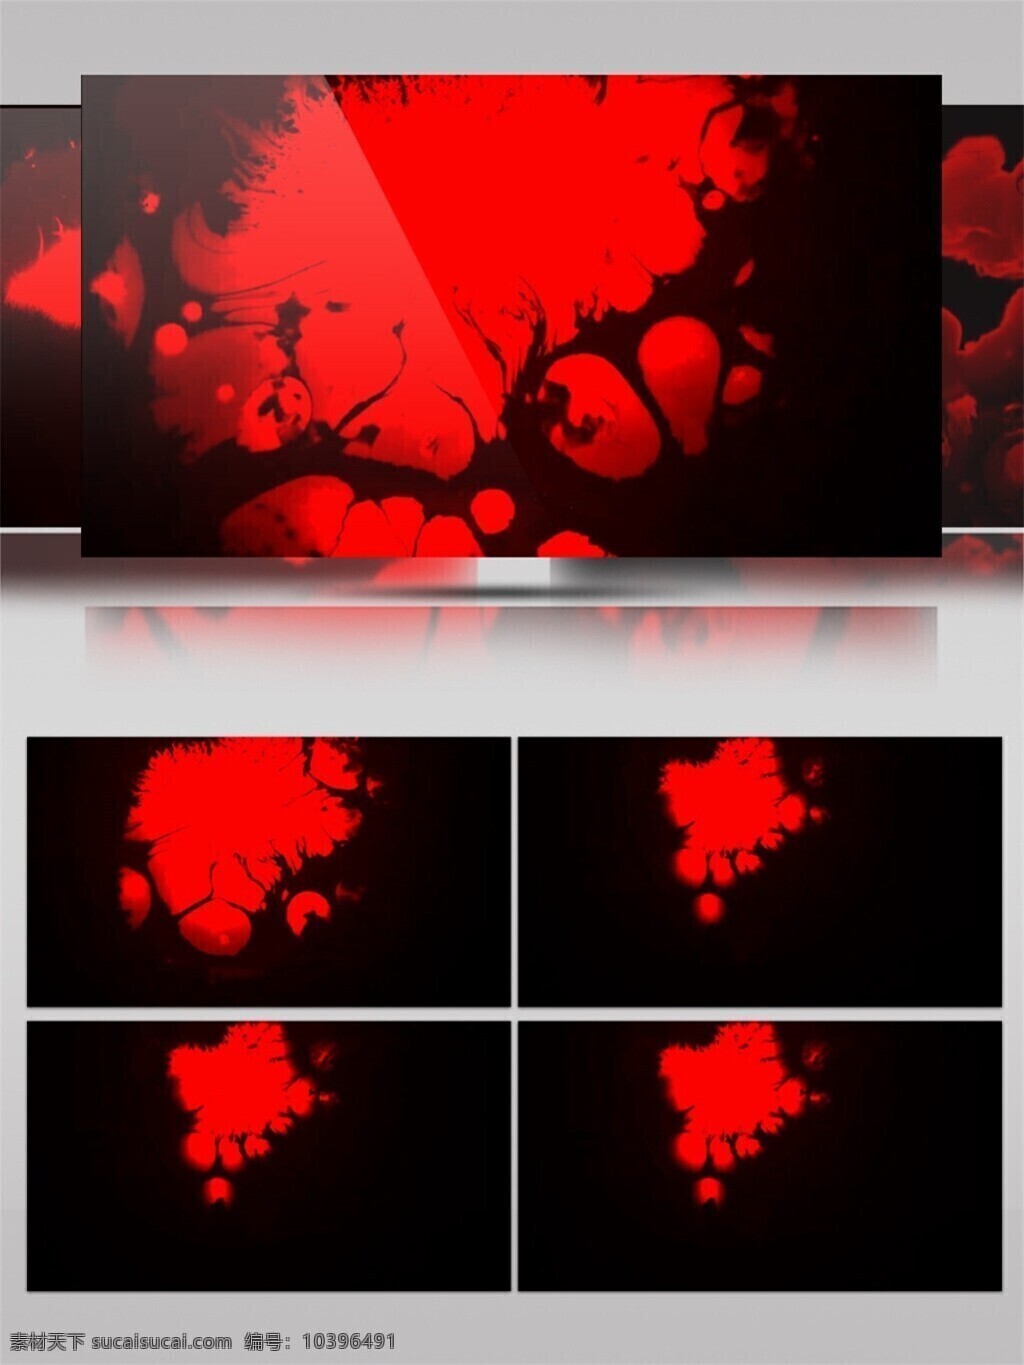 高清素材 光景素材 光束 红色 激光 唯美素材 星际 泡沫 动态 视频